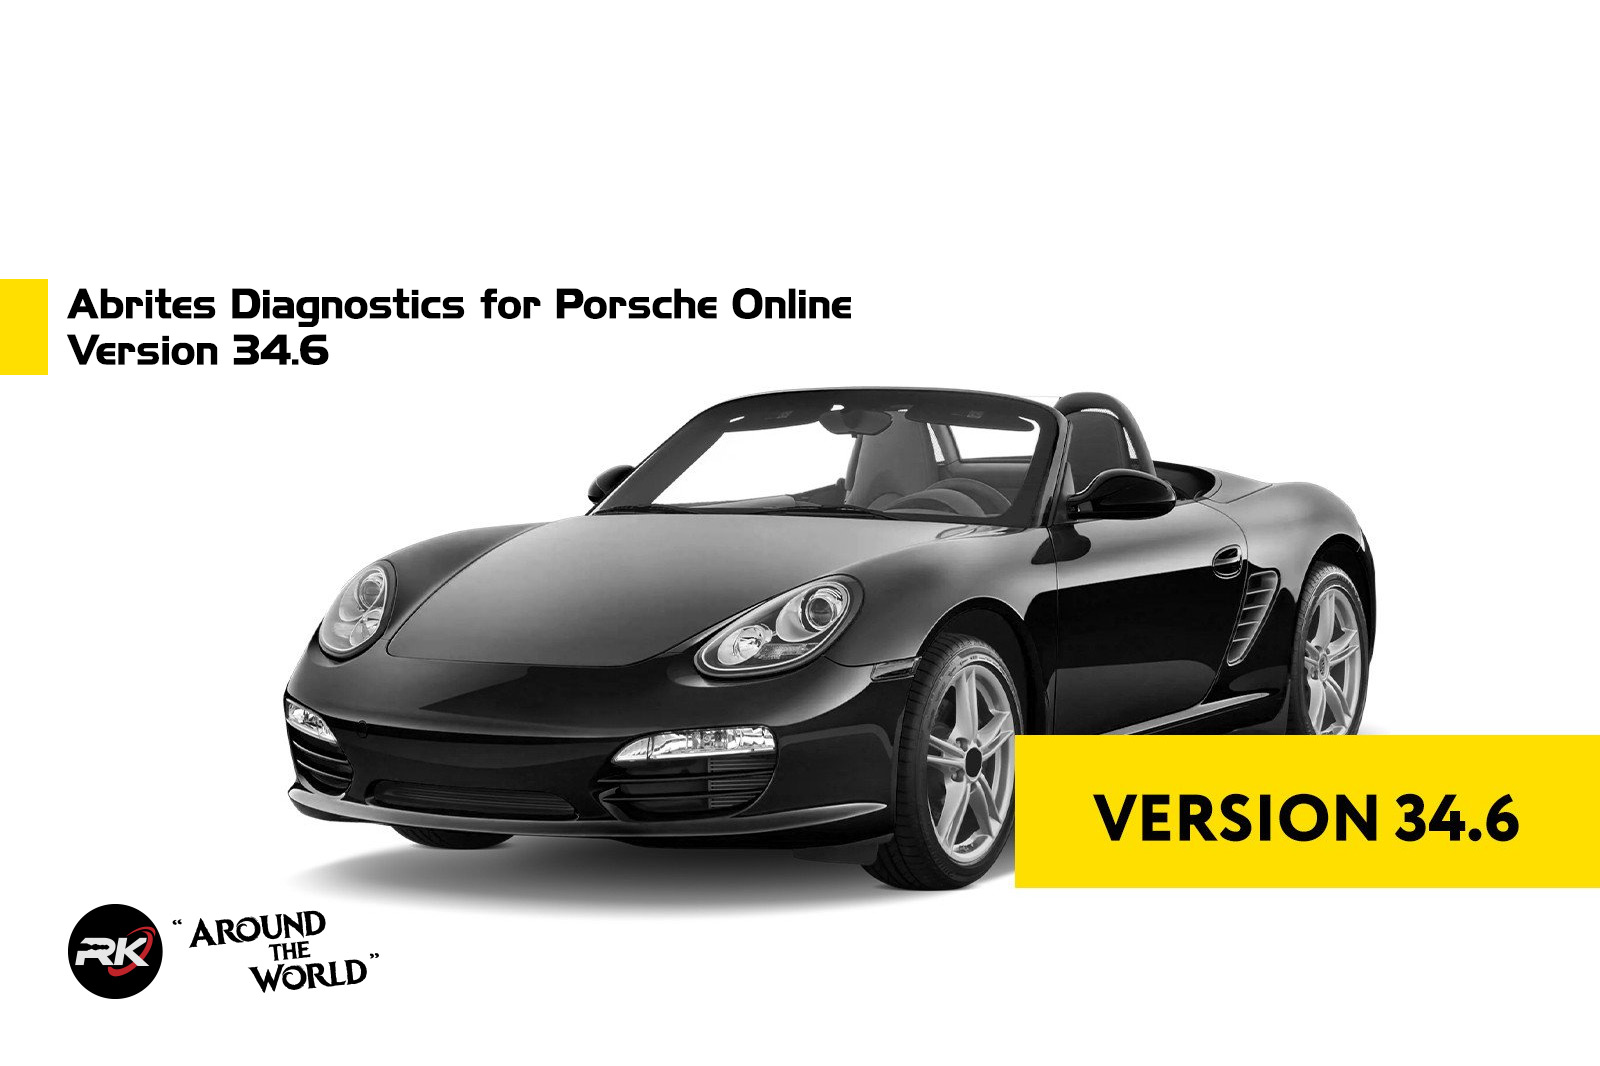 Abrites Diagnostics for Porsche Online Version 34.6